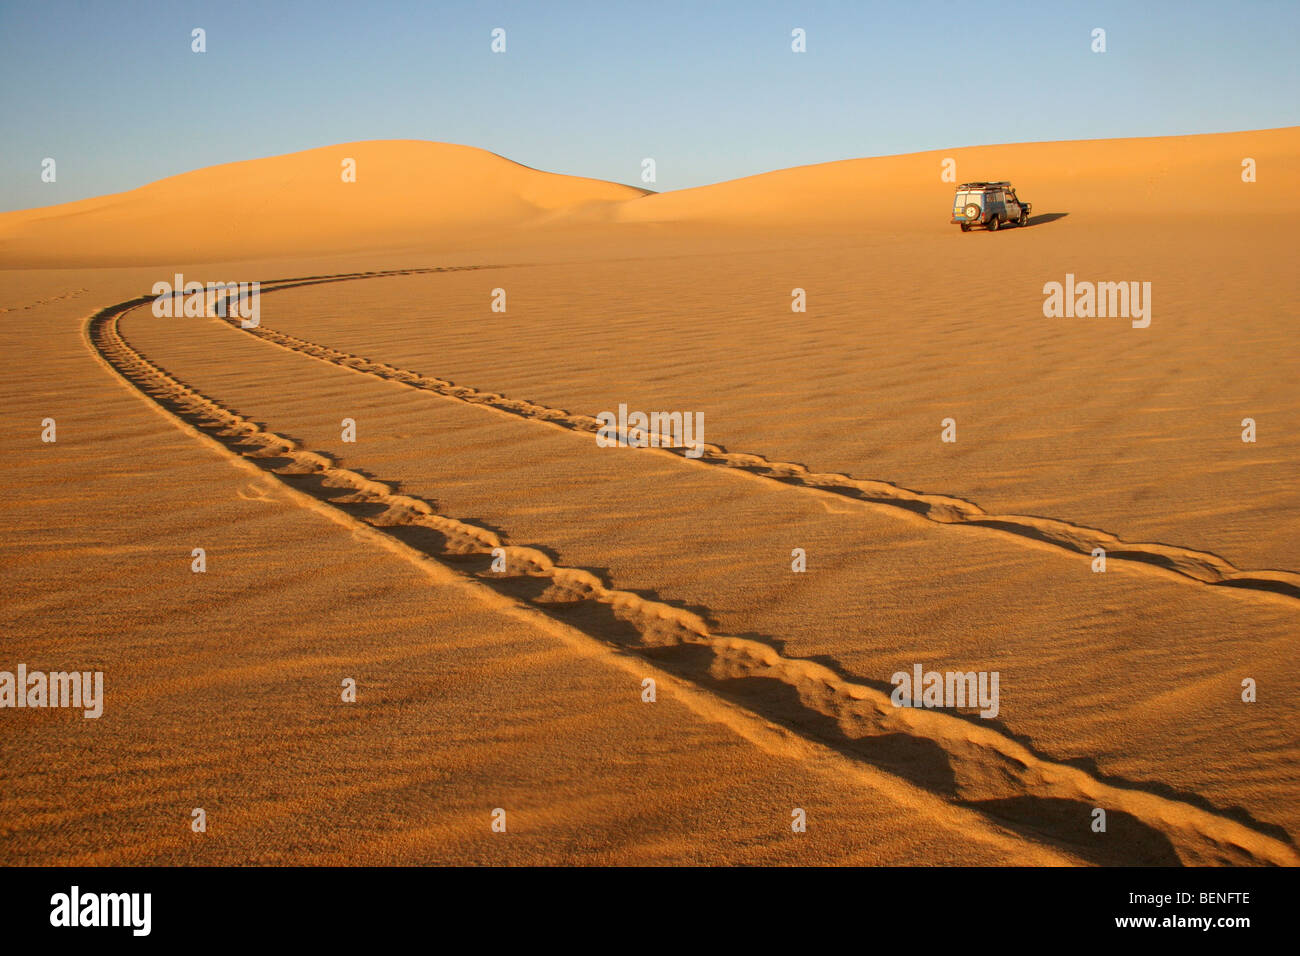 Off-road veicolo a quattro ruote motrici in dune di sabbia rossa del deserto occidentale / Deserto Libico, Sahara, Egitto, Nord Africa Foto Stock